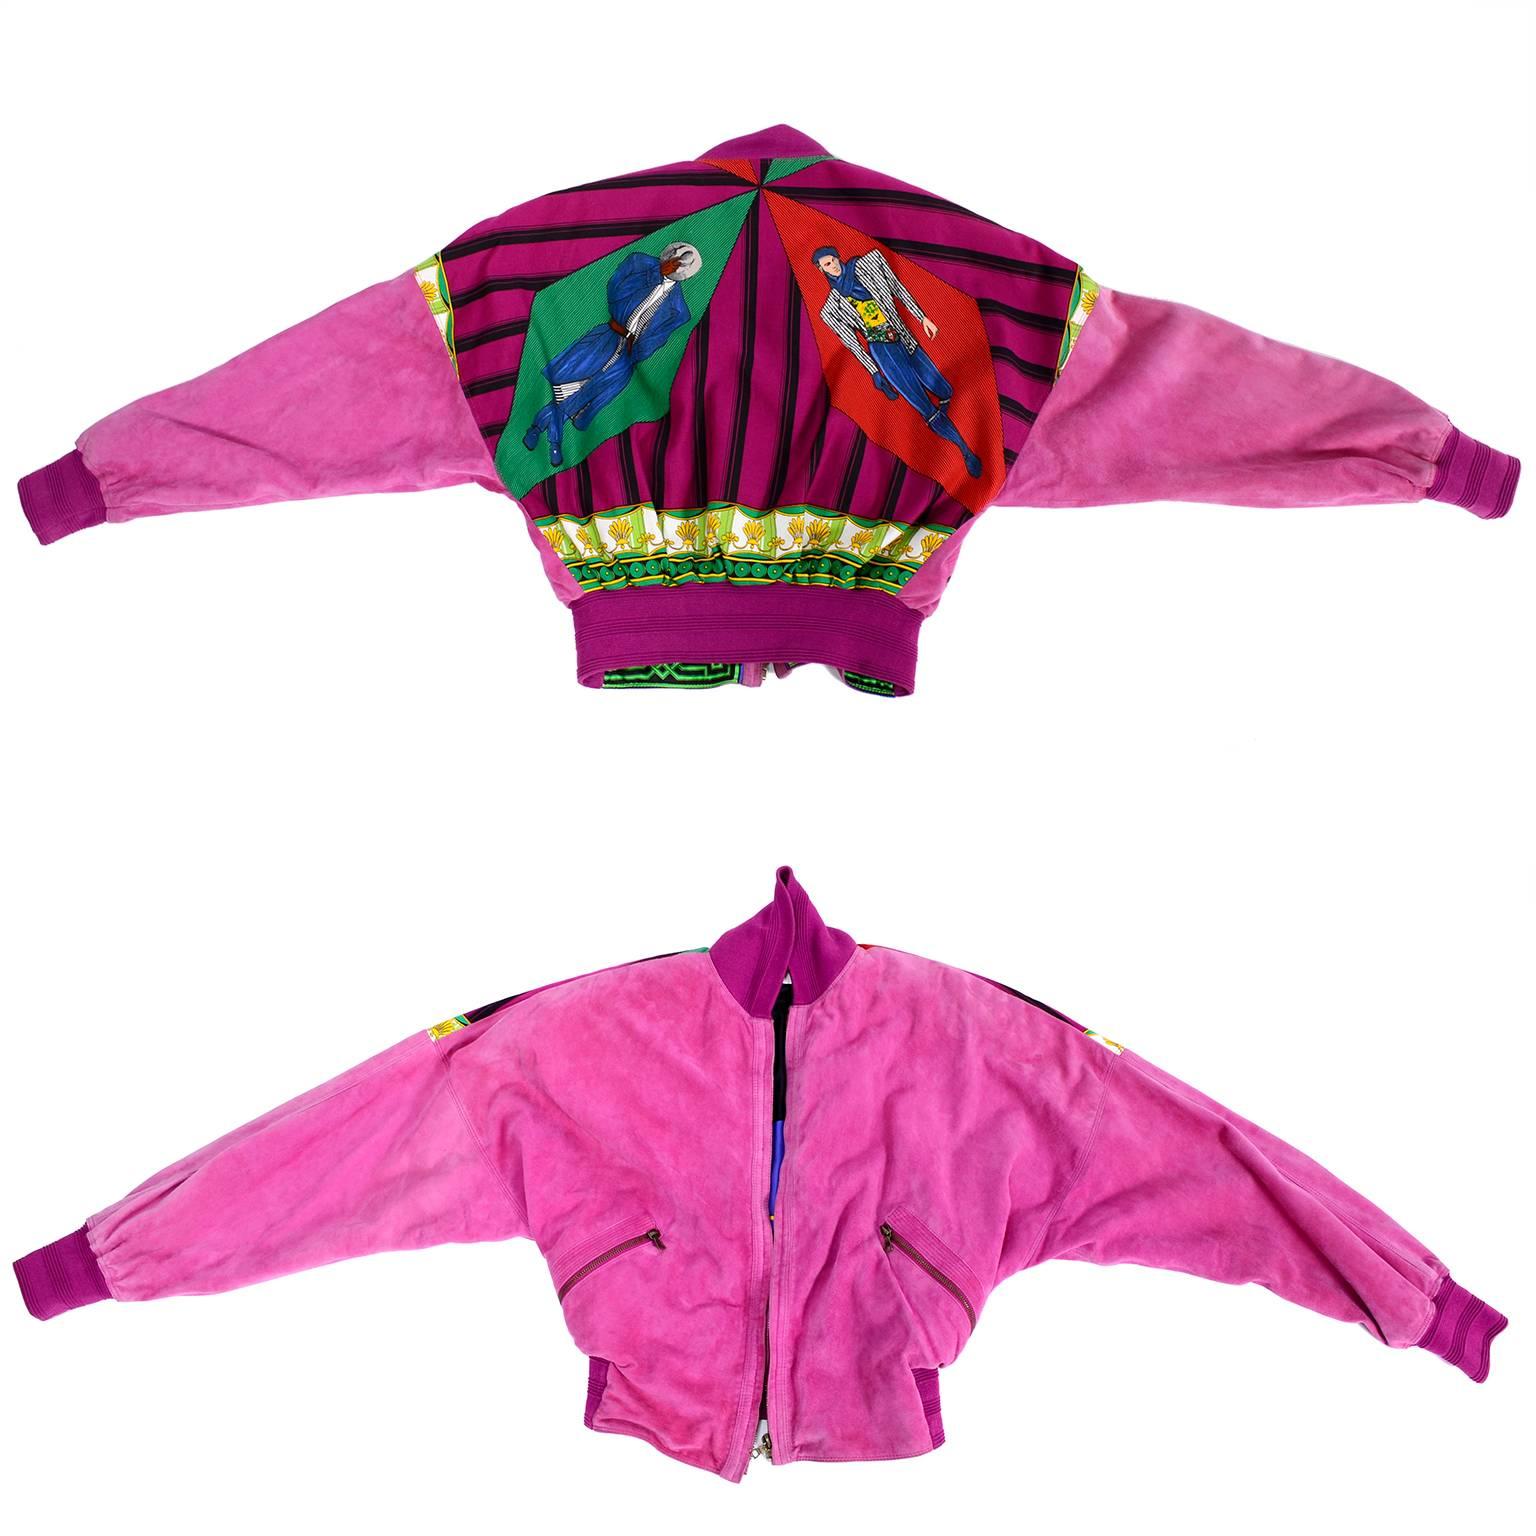 Gianni Versace Jacke aus rosa Wildleder und beidseitig bedruckter Seide:: 1980er Jahre (Pink)